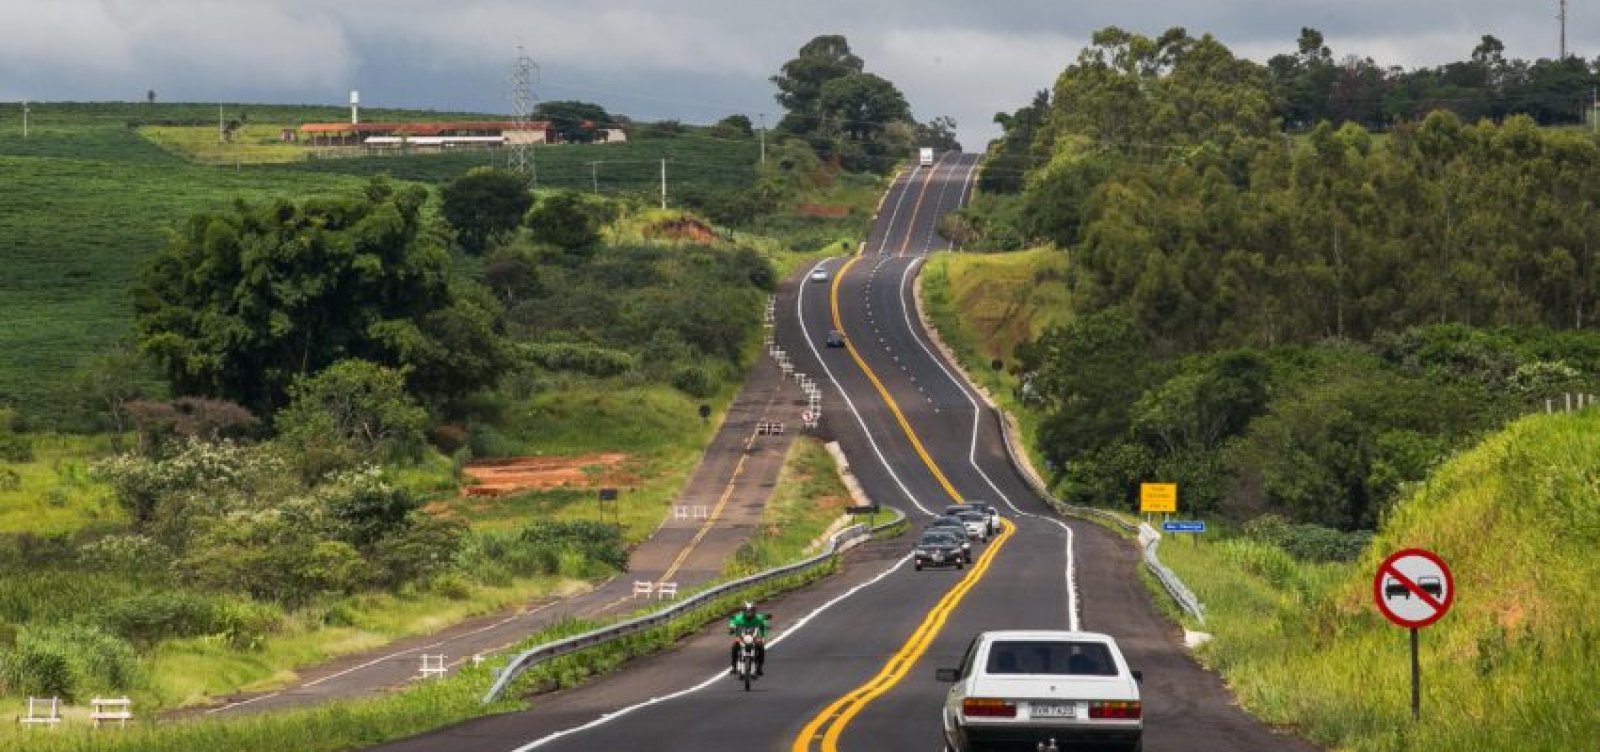 Metade das estradas do país terá condições péssimas ou inaceitáveis em 2025